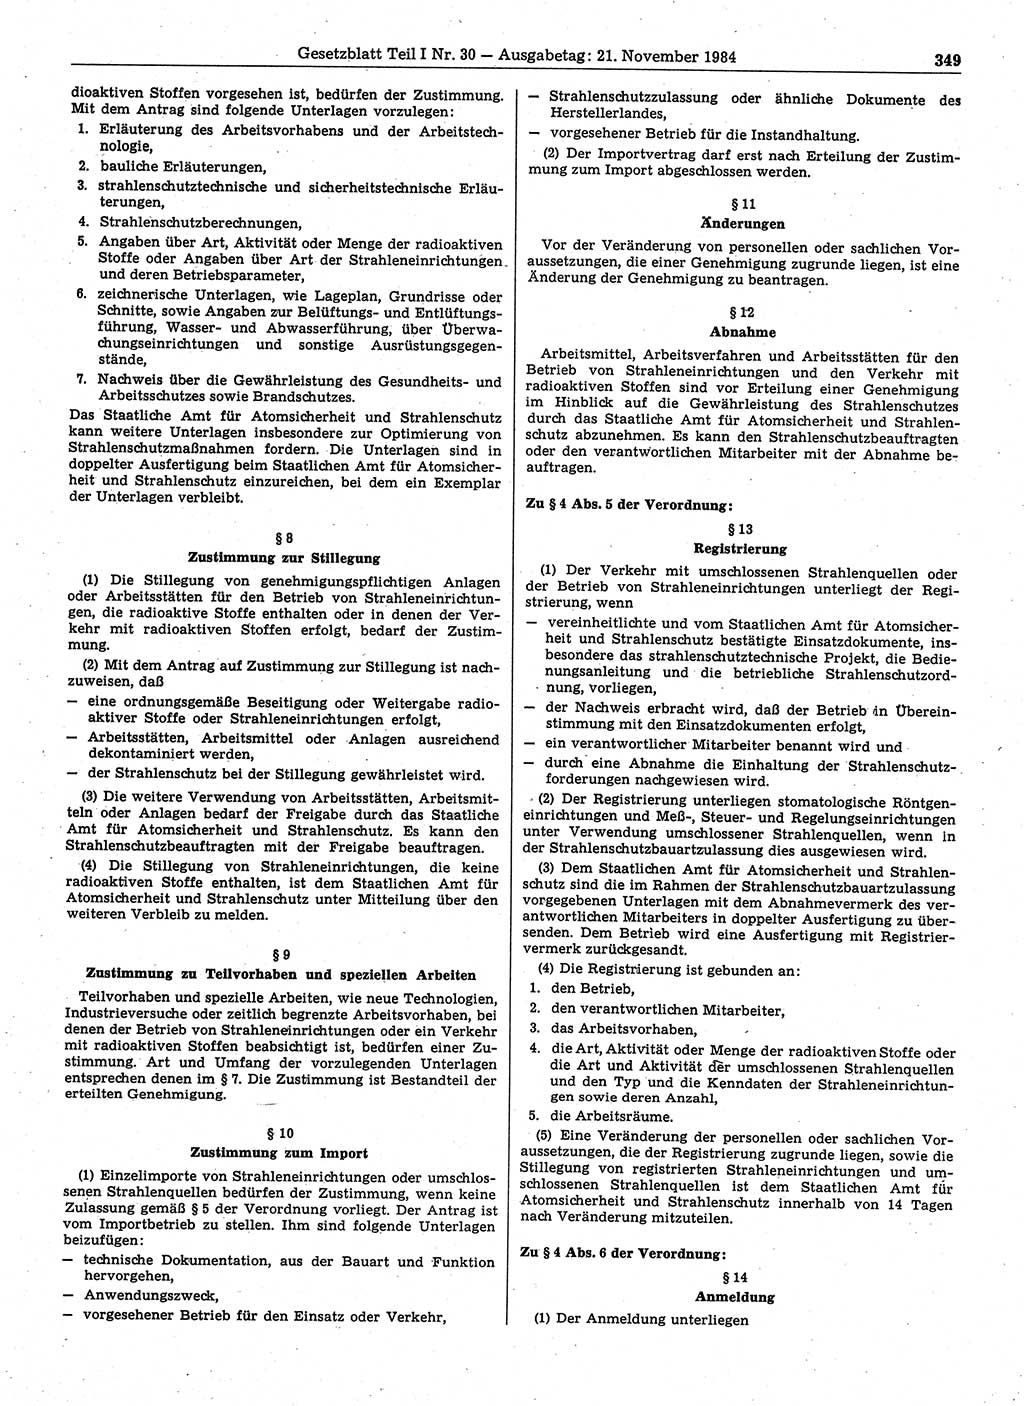 Gesetzblatt (GBl.) der Deutschen Demokratischen Republik (DDR) Teil Ⅰ 1984, Seite 349 (GBl. DDR Ⅰ 1984, S. 349)